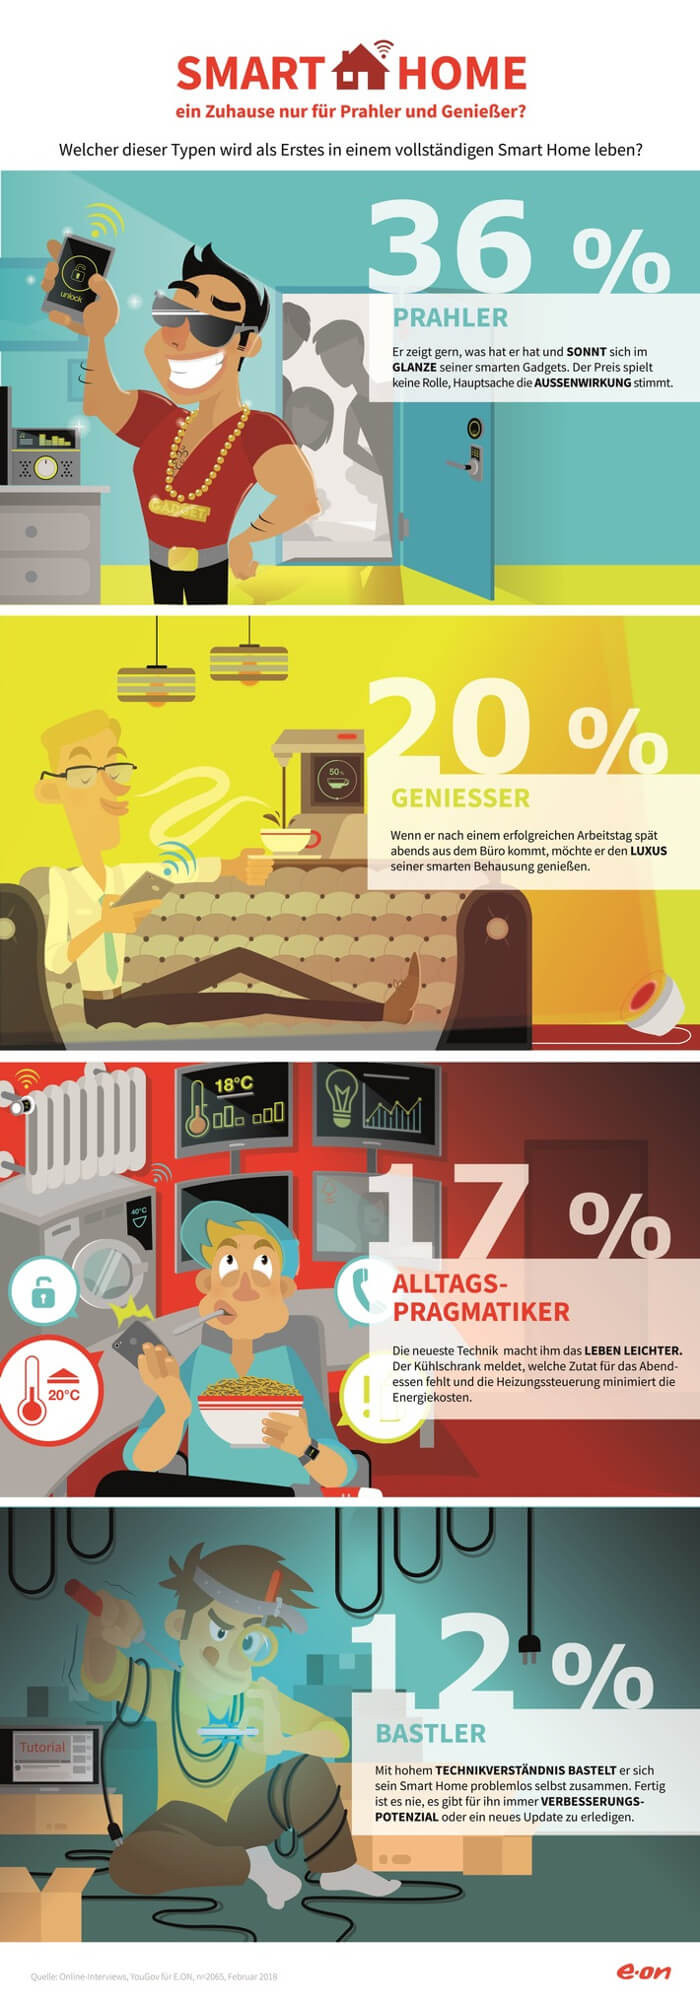 Infografik von E.ON: Welche Typen von Verbrauchern werden zuerst in vollvernetzten Heimen wohnen?